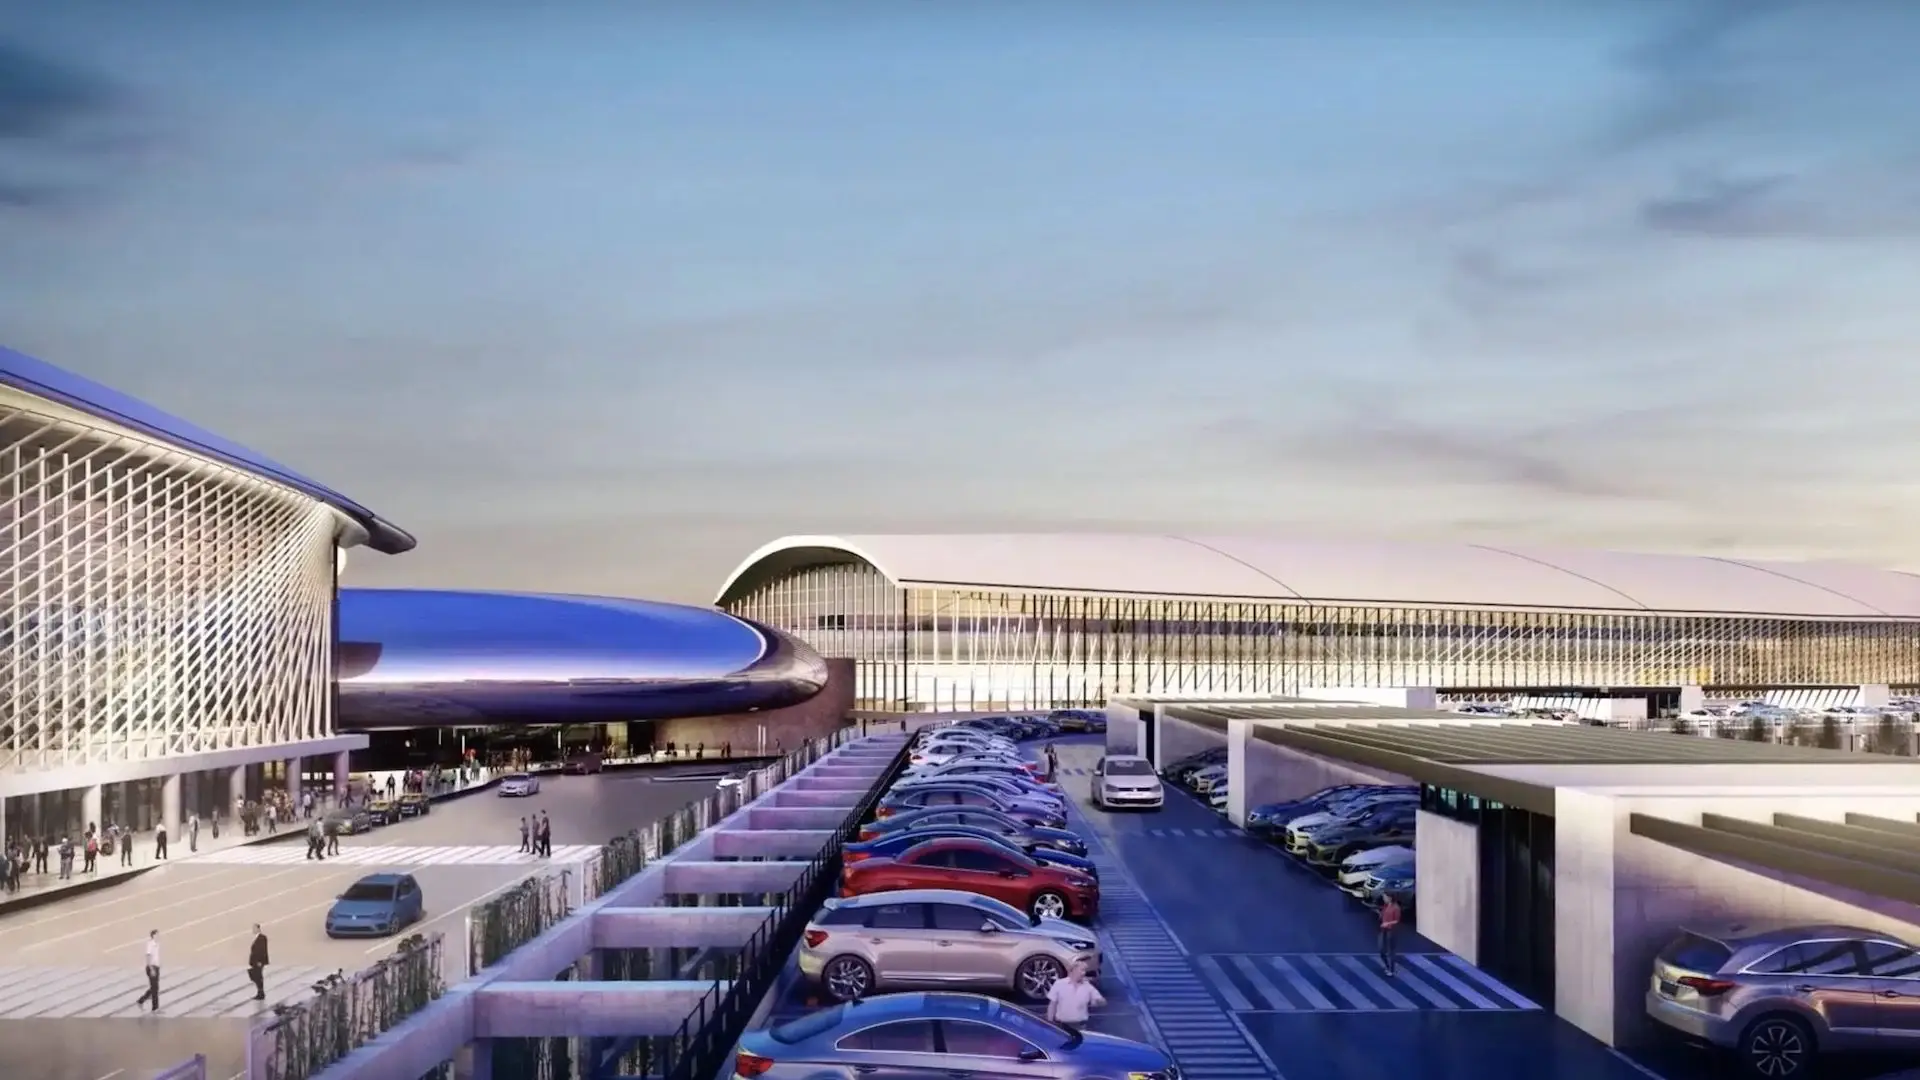 Zeppelin: el nuevo aeropuerto de Ezeiza inaugura en 2023. ¿Cómo será?